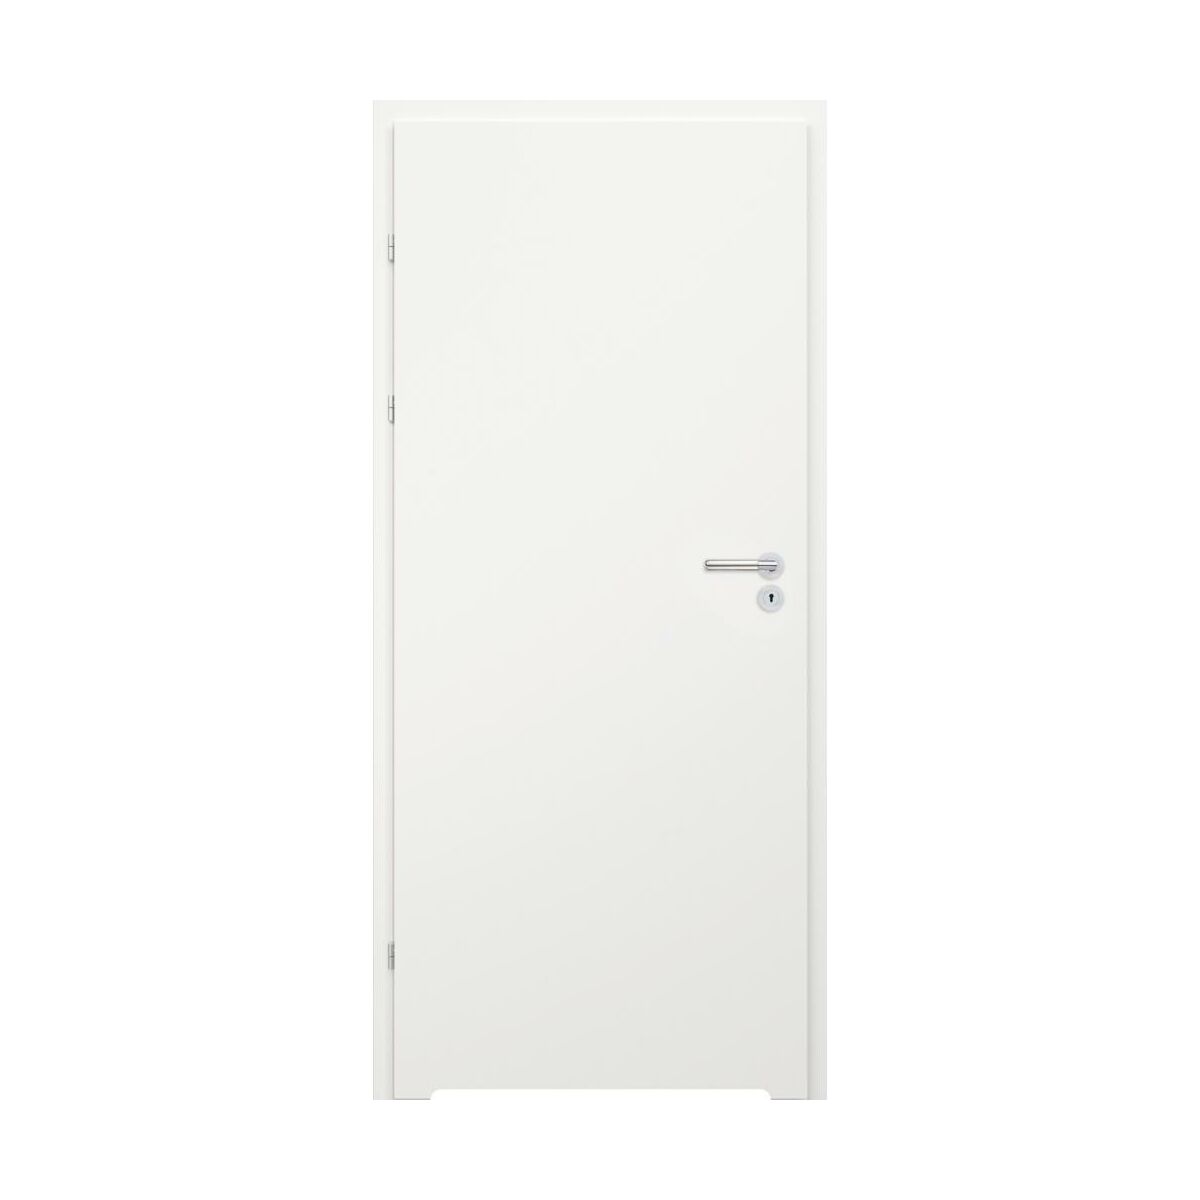 Drzwi wewnętrzne lakierowane łazienkowe pełne z podcięciem wentylacyjnym Kesa białe 80 lewe Classen